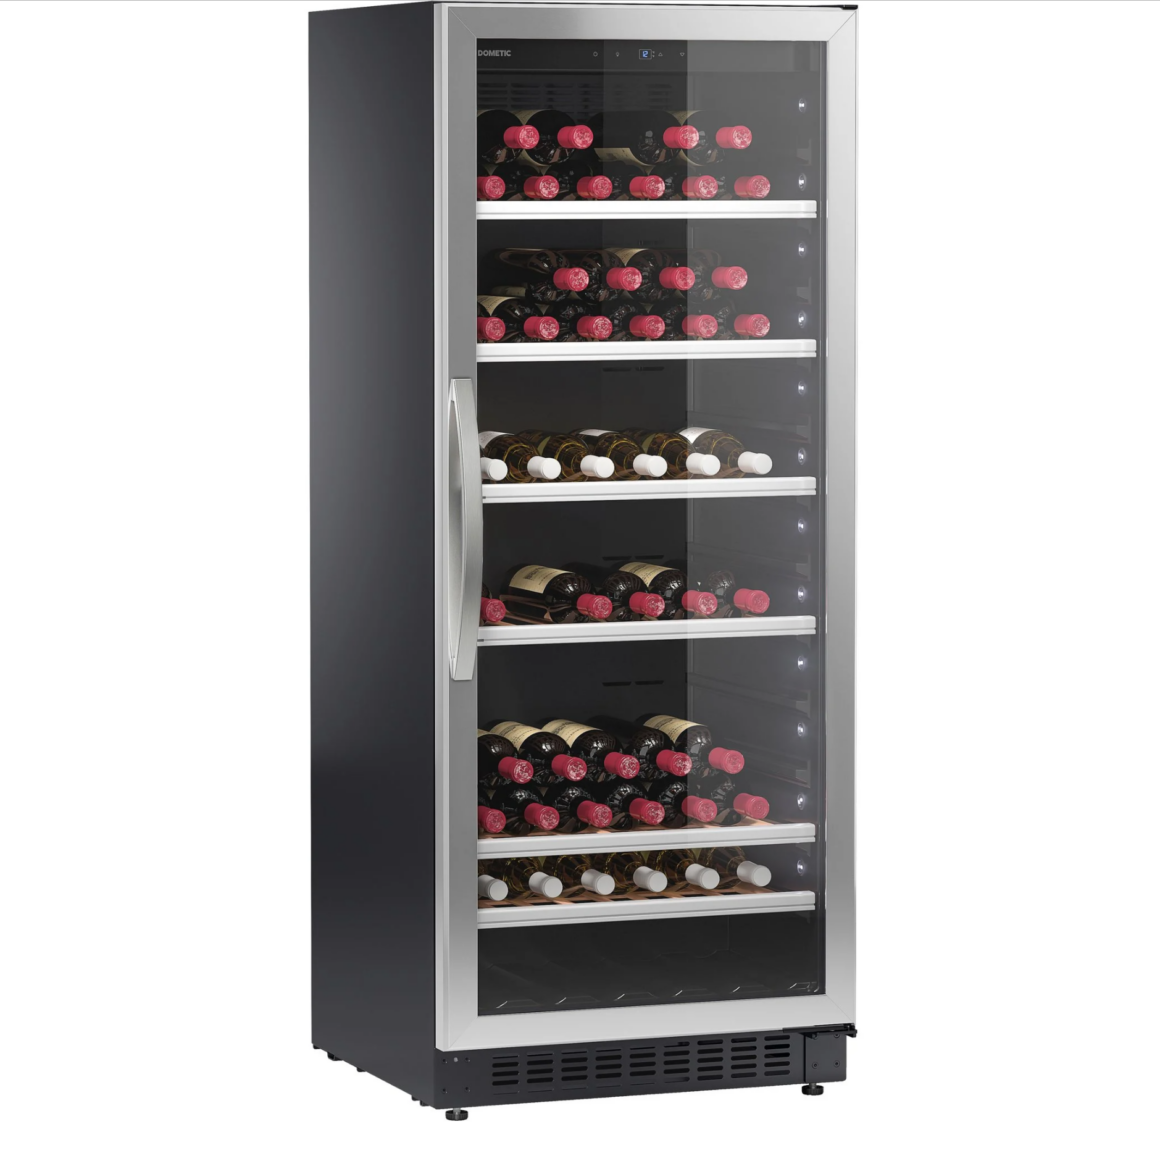 Dometic vinkøleskab til 101 flasker i stilfuldt design